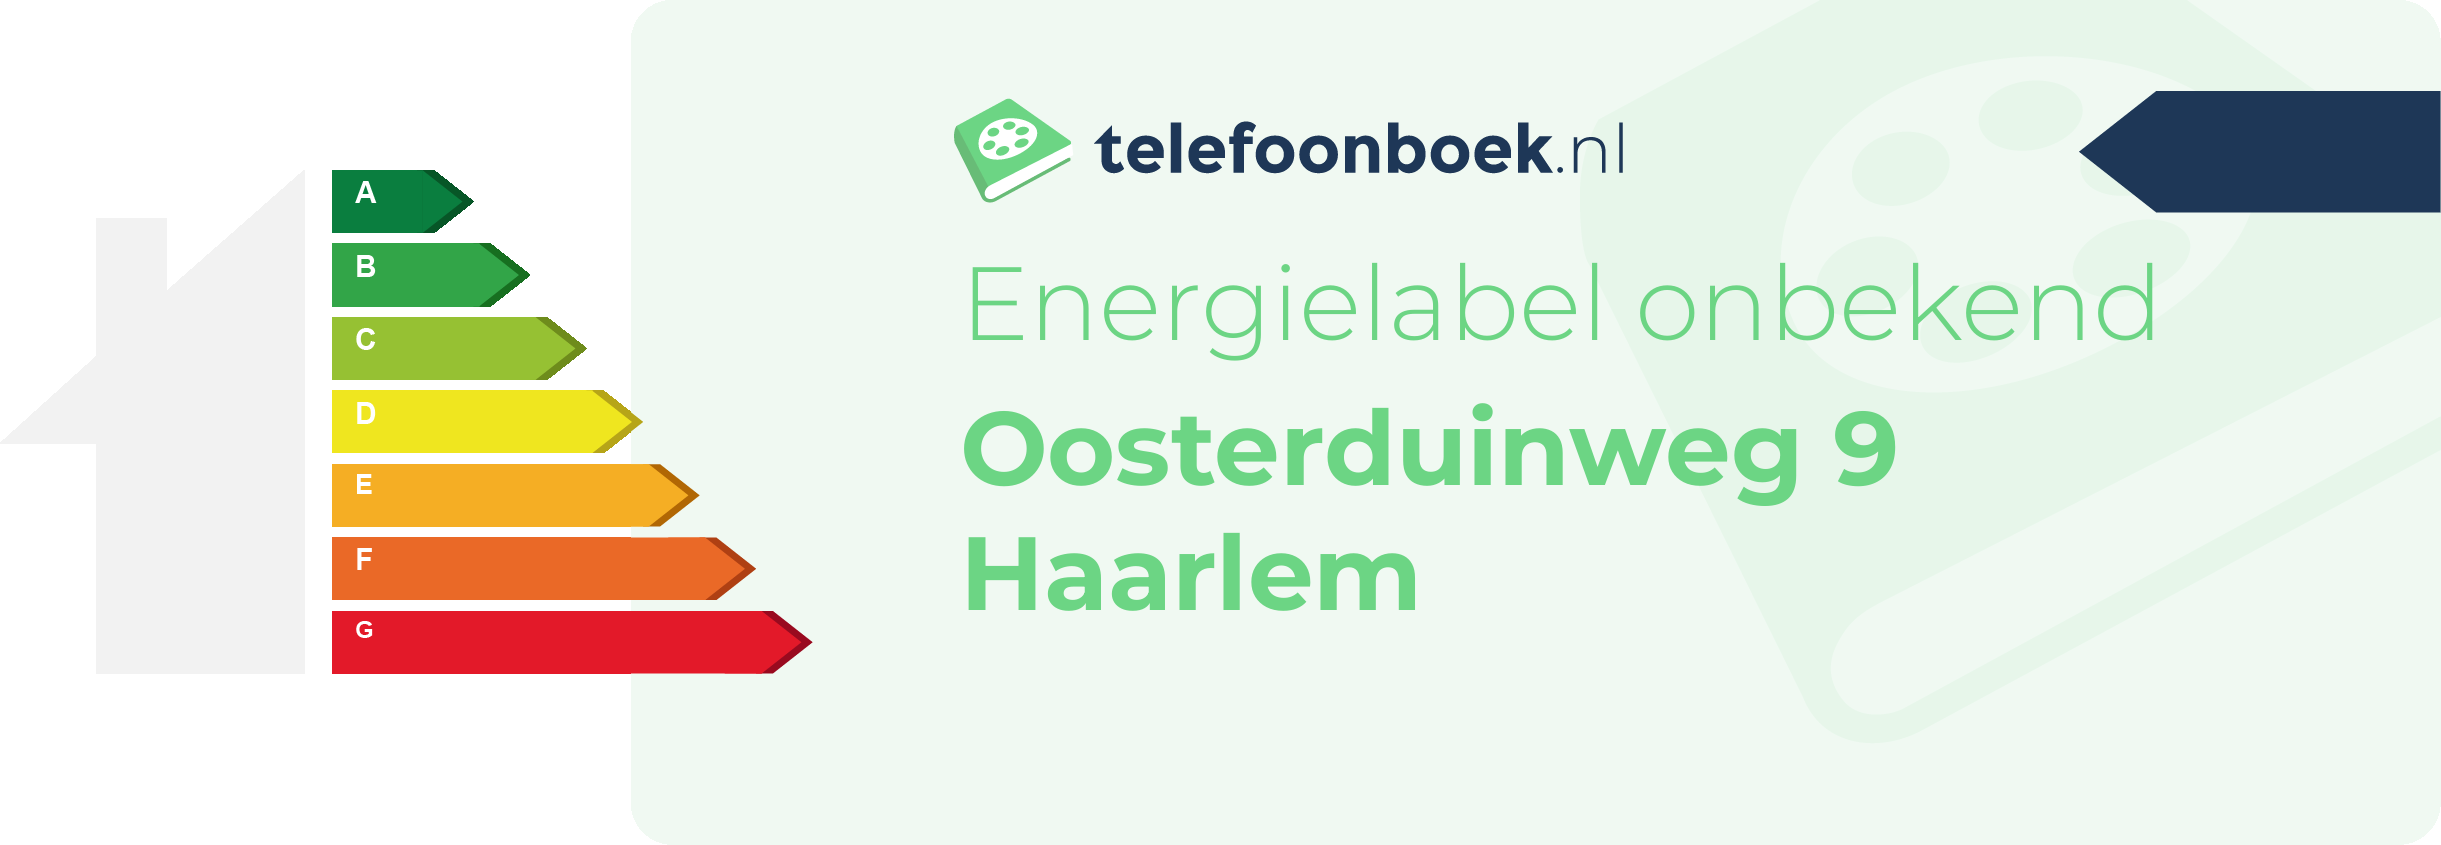 Energielabel Oosterduinweg 9 Haarlem